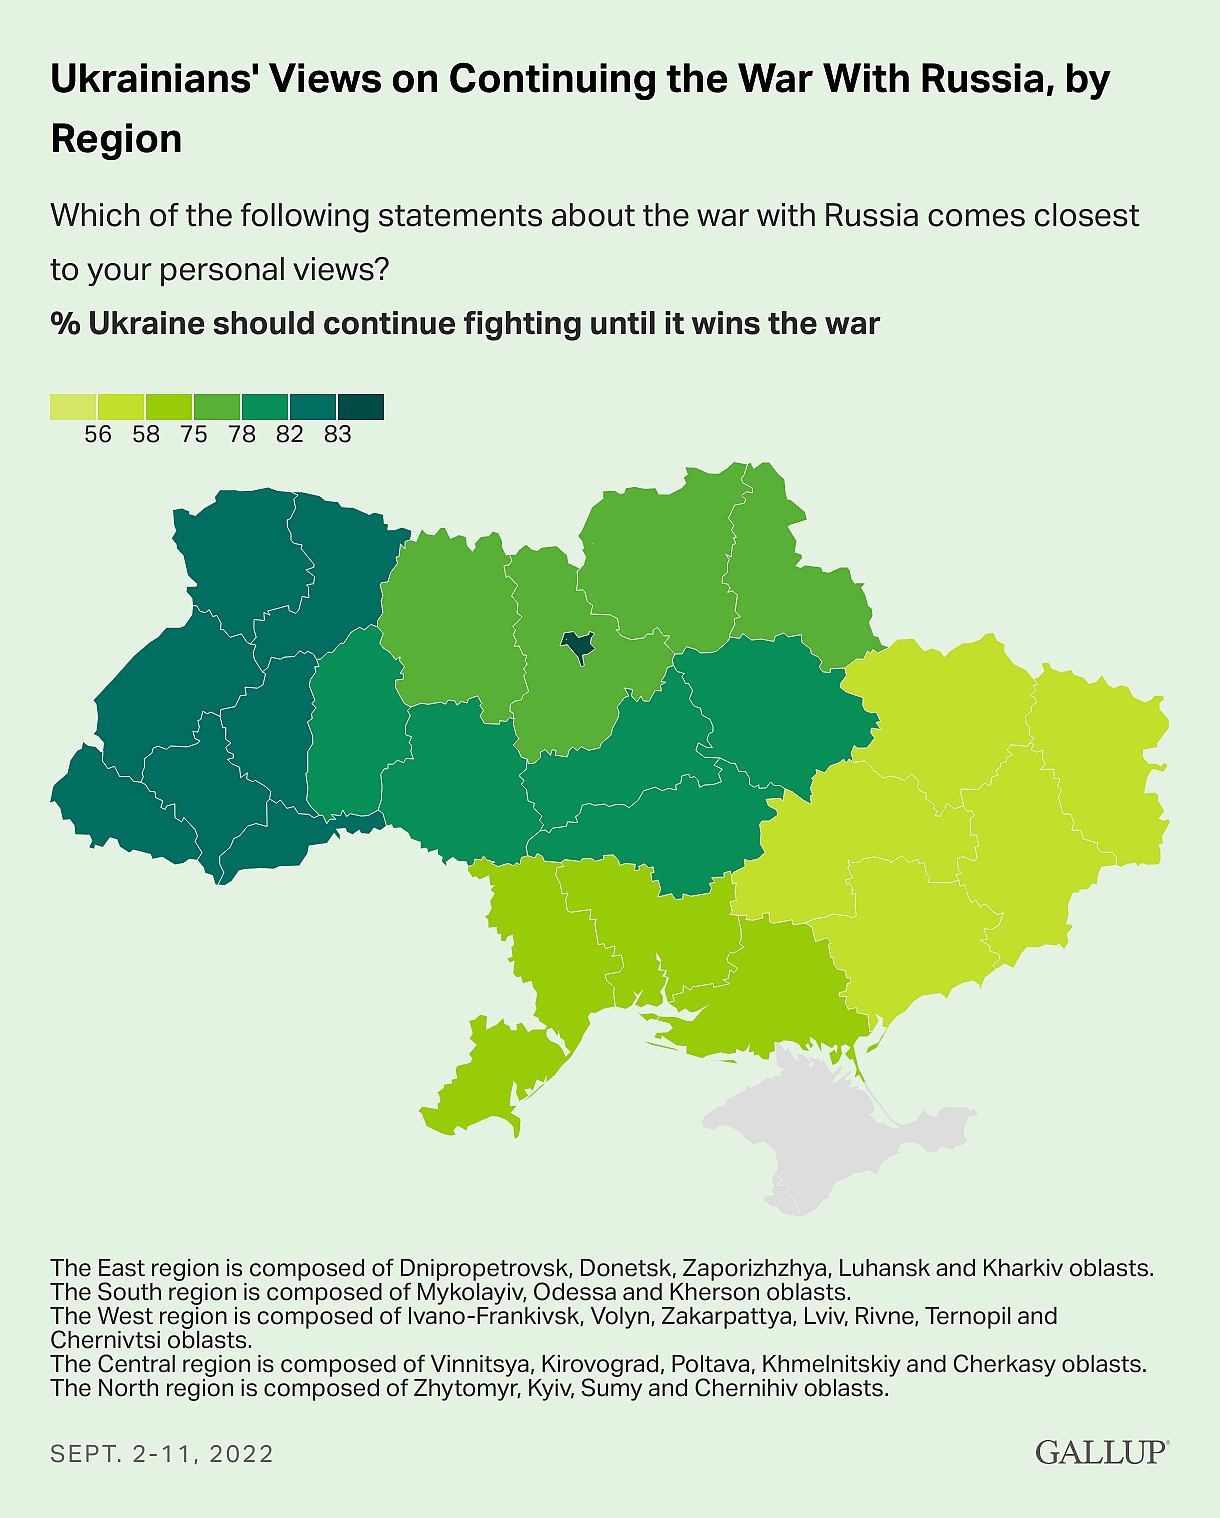 Poparcie dla kontynuowania wojny z Rosją z podziałem na regiony Ukrainy, wrzesień 2022, Gallup